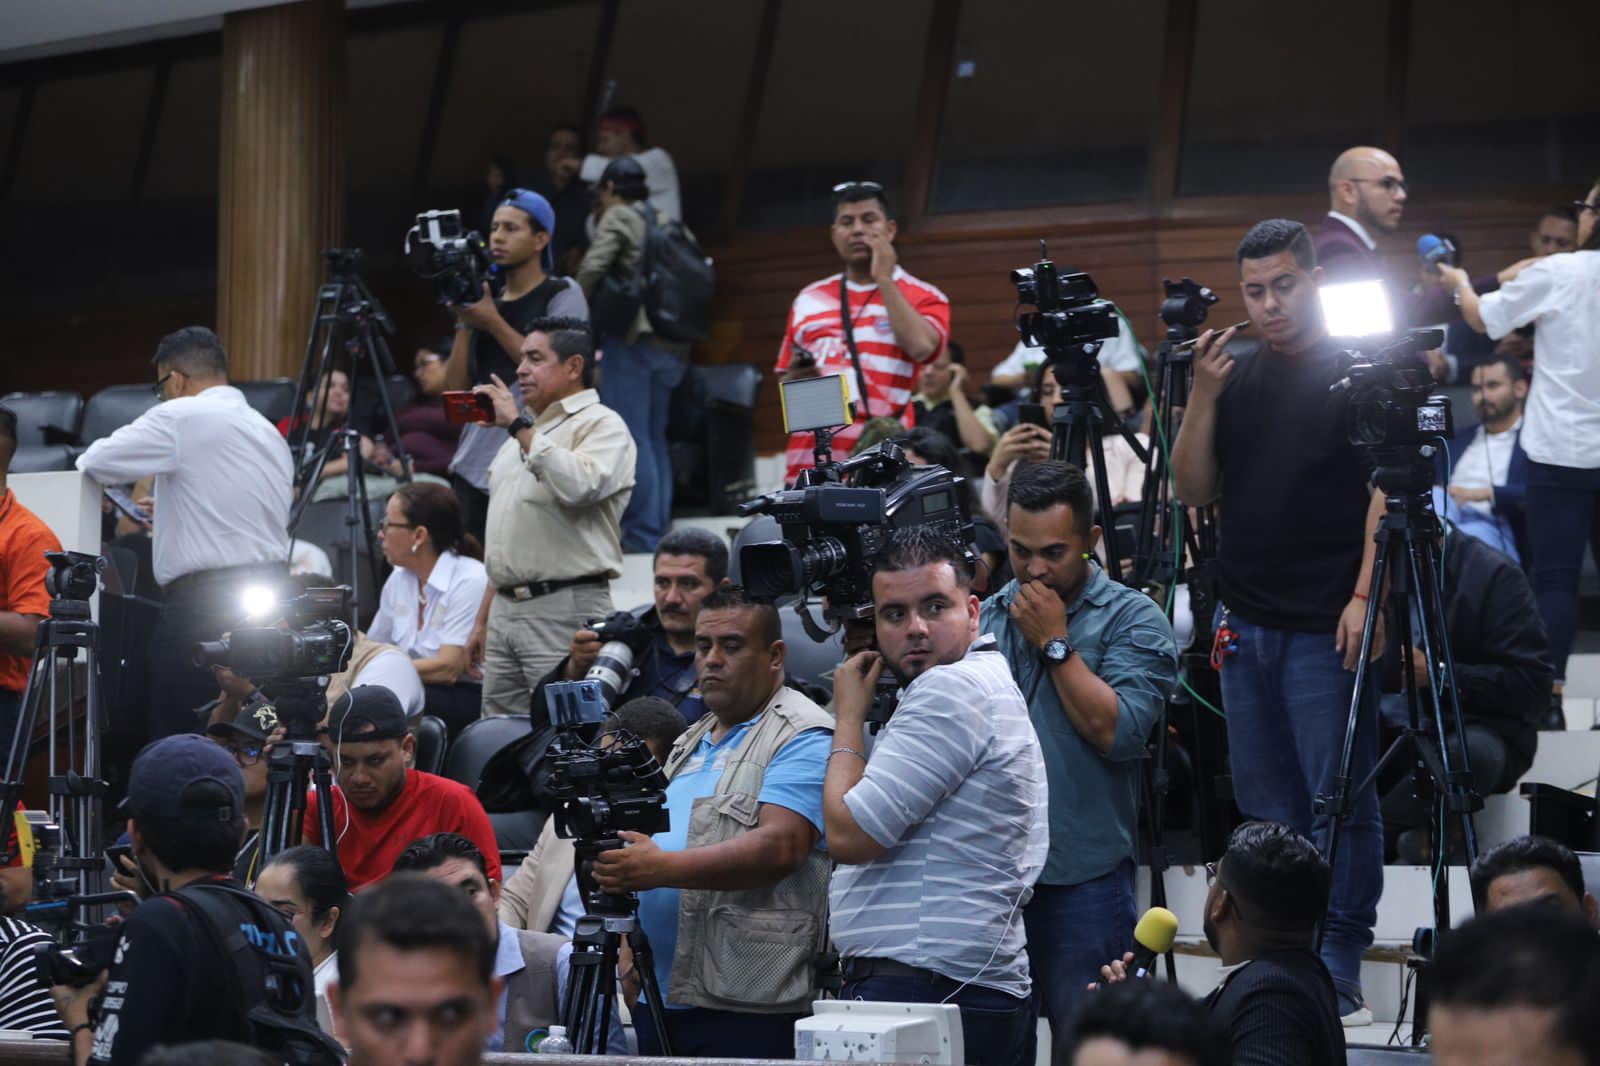 VIDEO: Periodista se ofrece a probar chaleco antipuñaladas y termina  apuñalado -   Noticias de última hora y sucesos de Honduras.  Deportes, Ciencia y Entretenimiento en general.